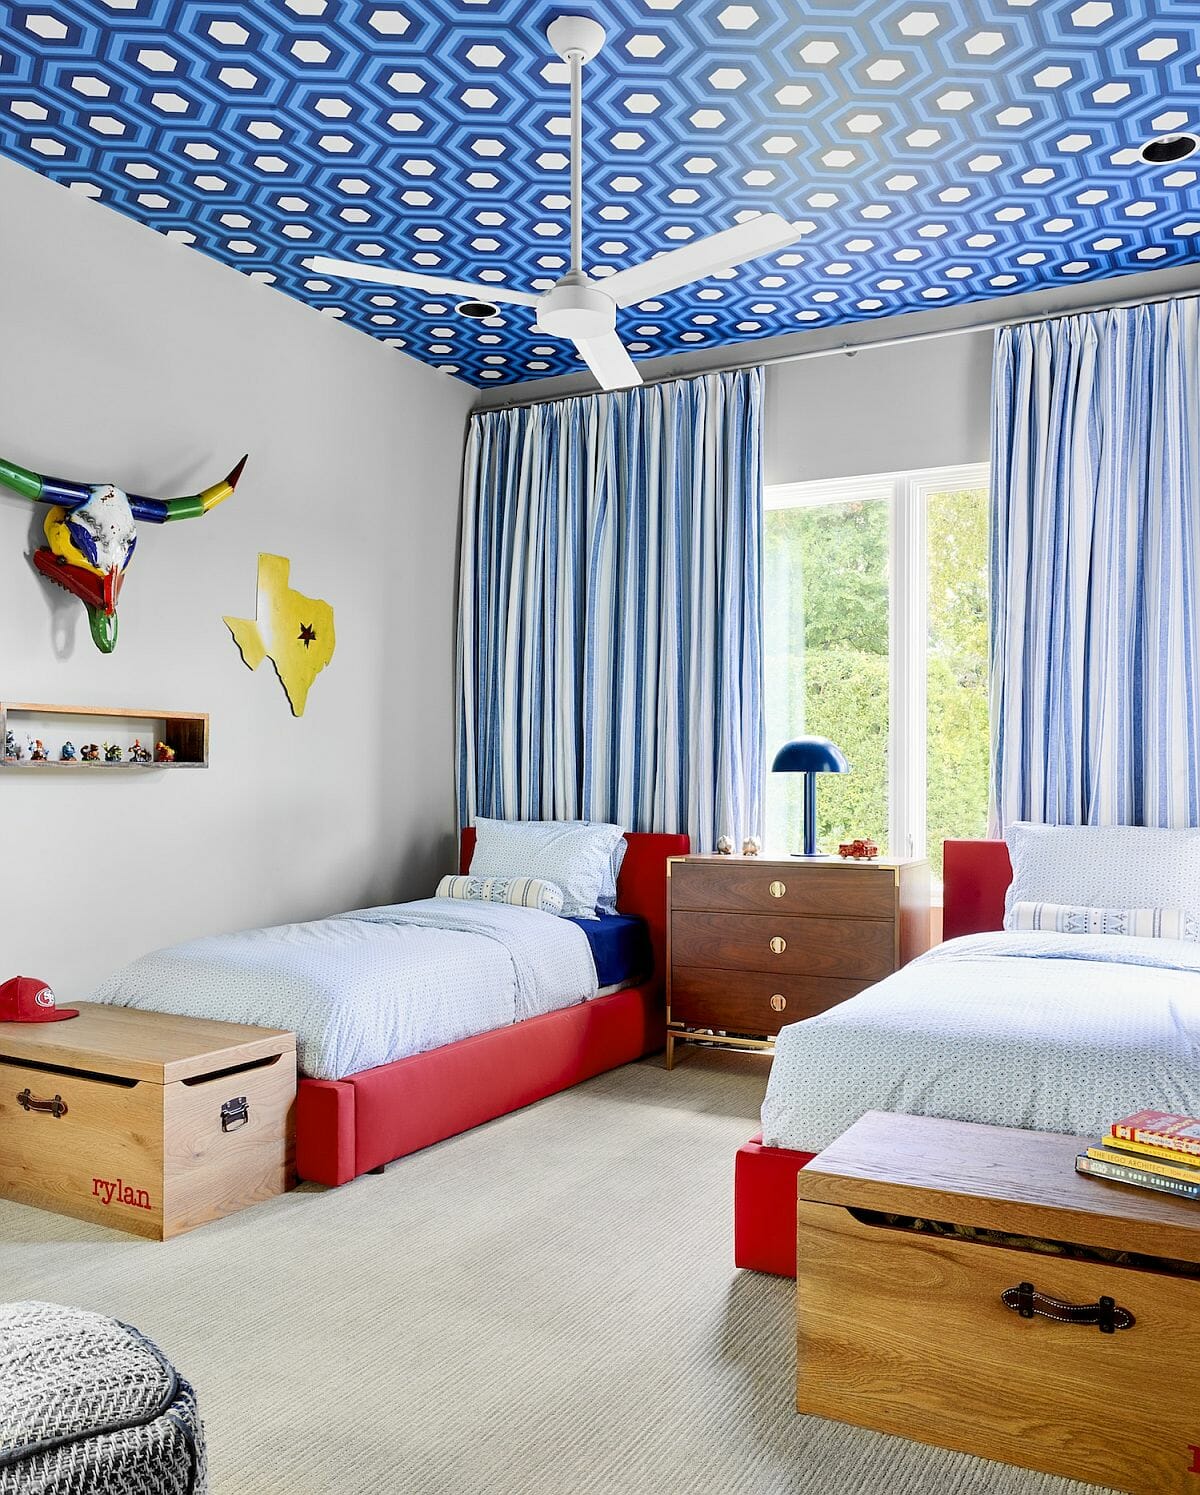 Phòng ngủ của trẻ ấn tượng với giấy dán trần màu xanh coban, họa tiết hình học